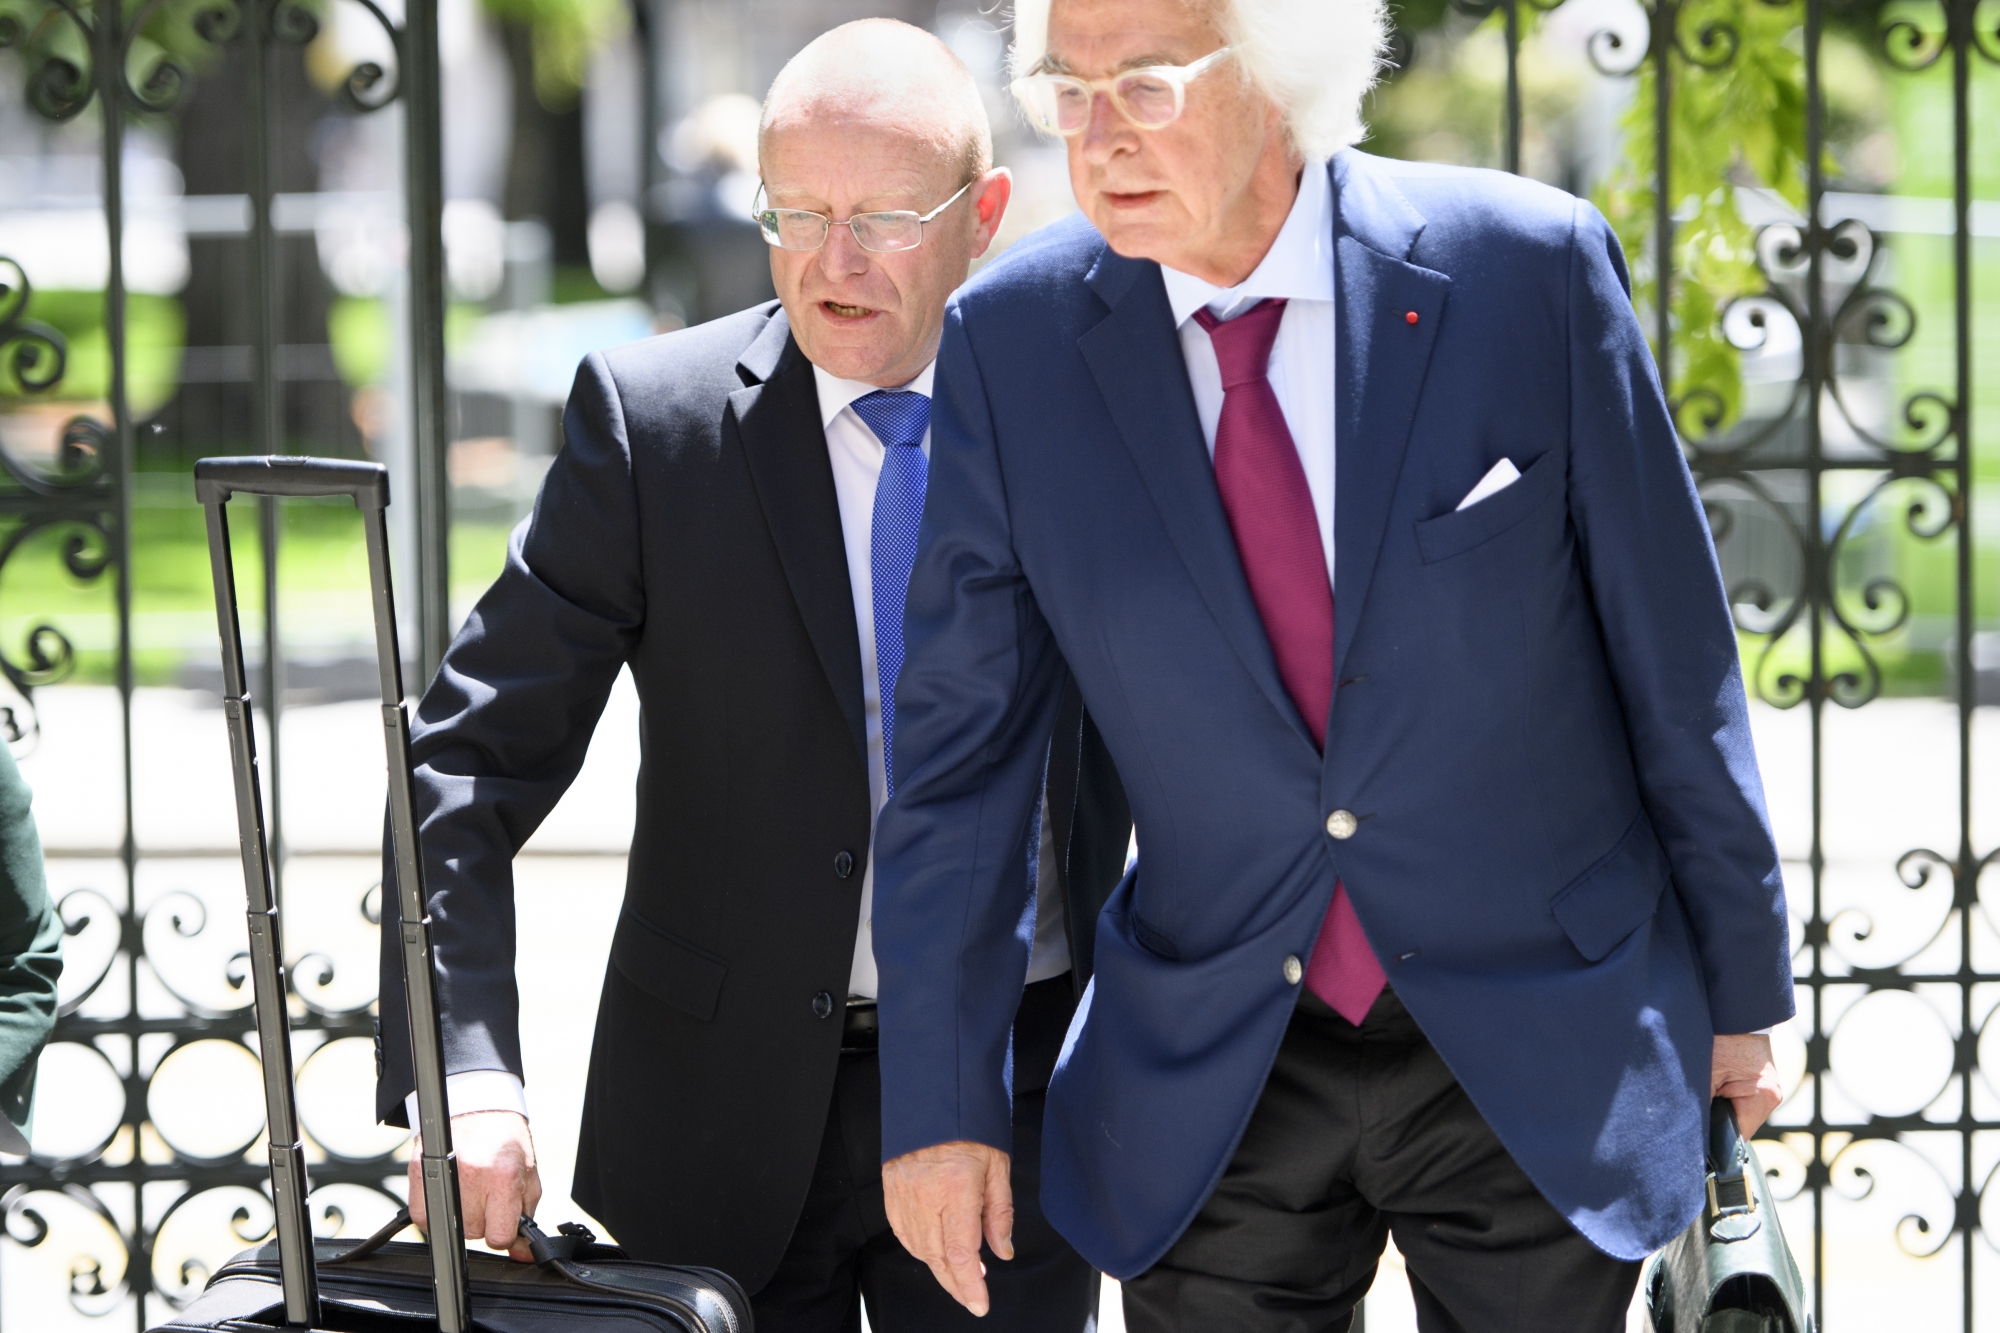 Le conseiller national Jean-Luc Addor, gauche, arrive en compagnie de son avocat Marc Bonnant au tribunal du district de Sion.